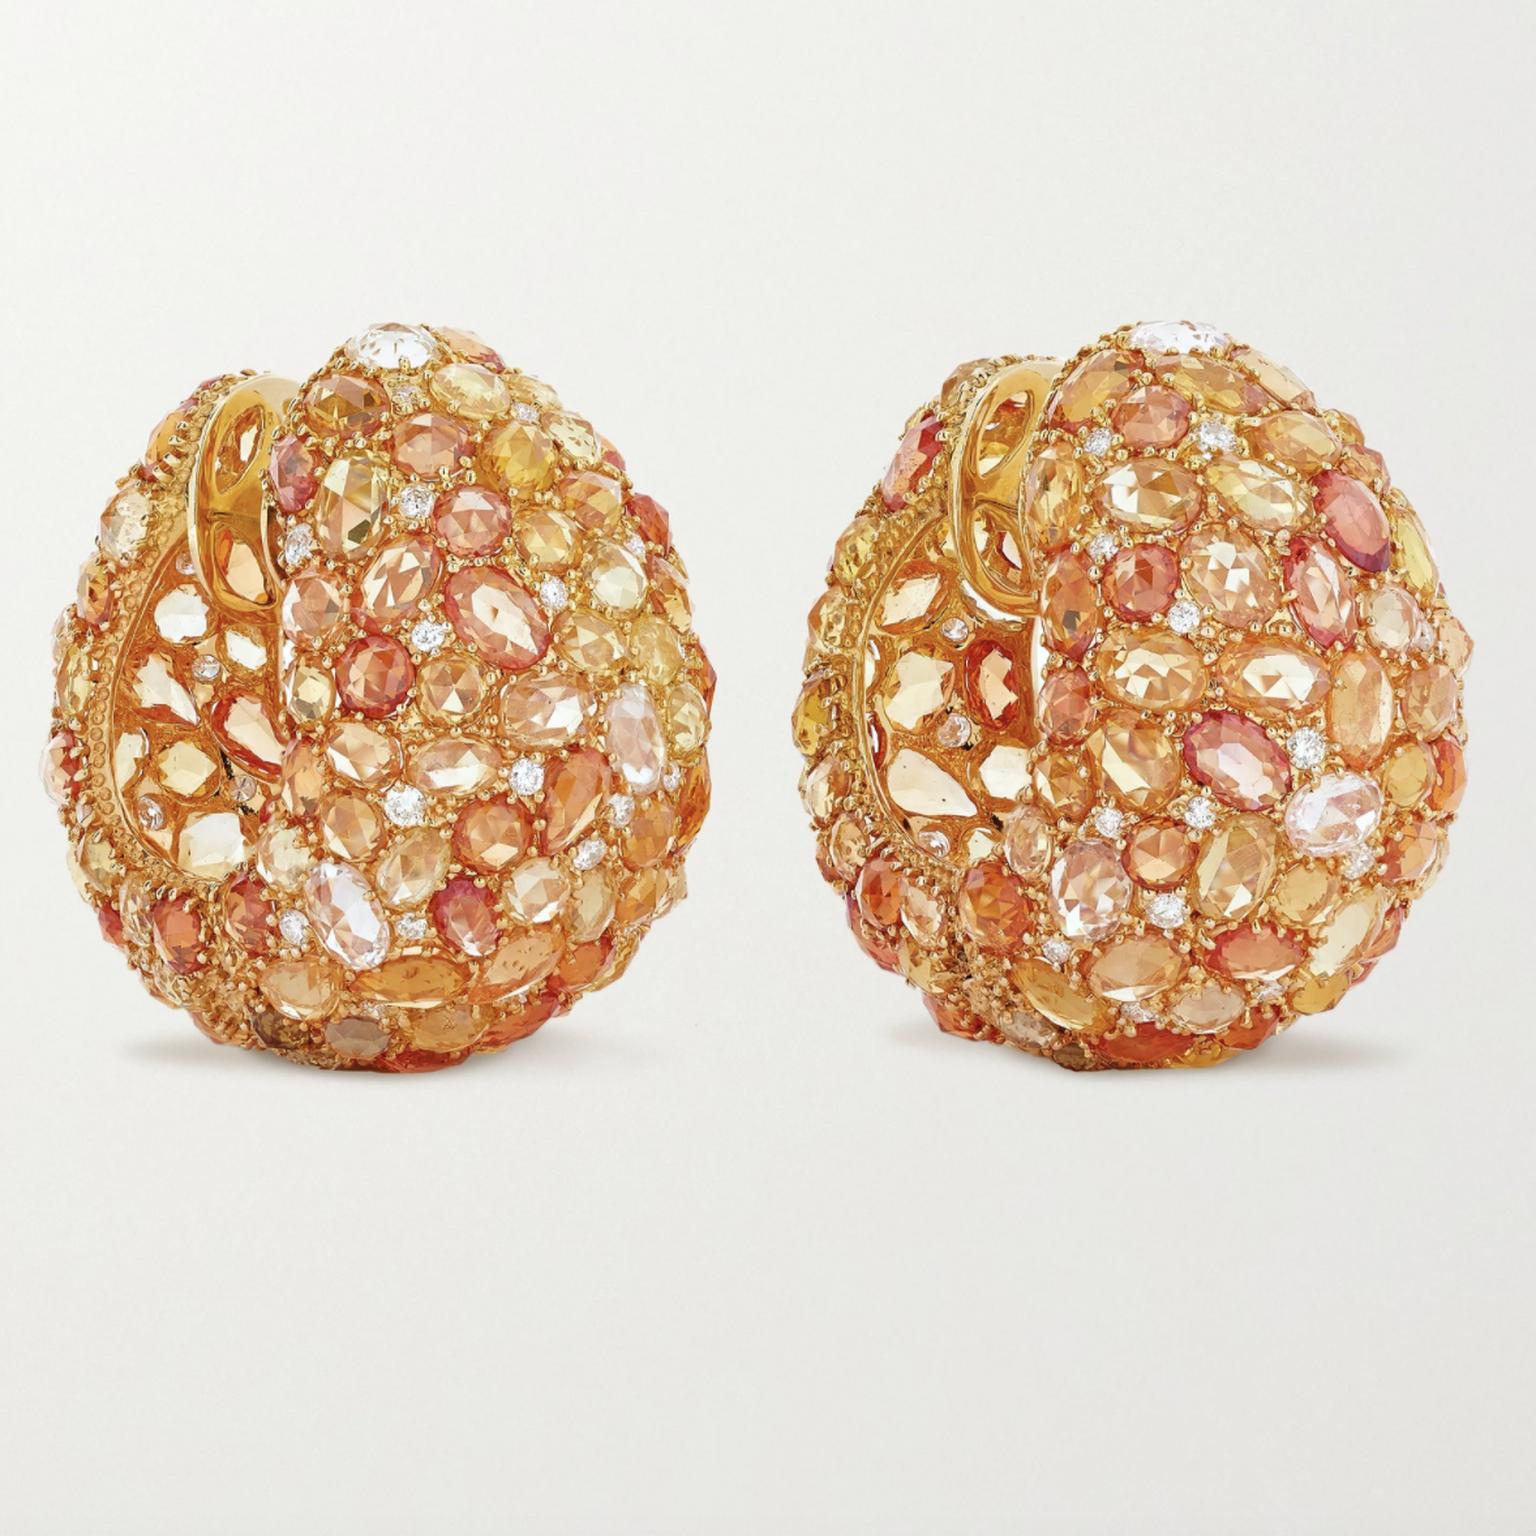 Sapphire and diamond earrings by Lorraine Schwartz